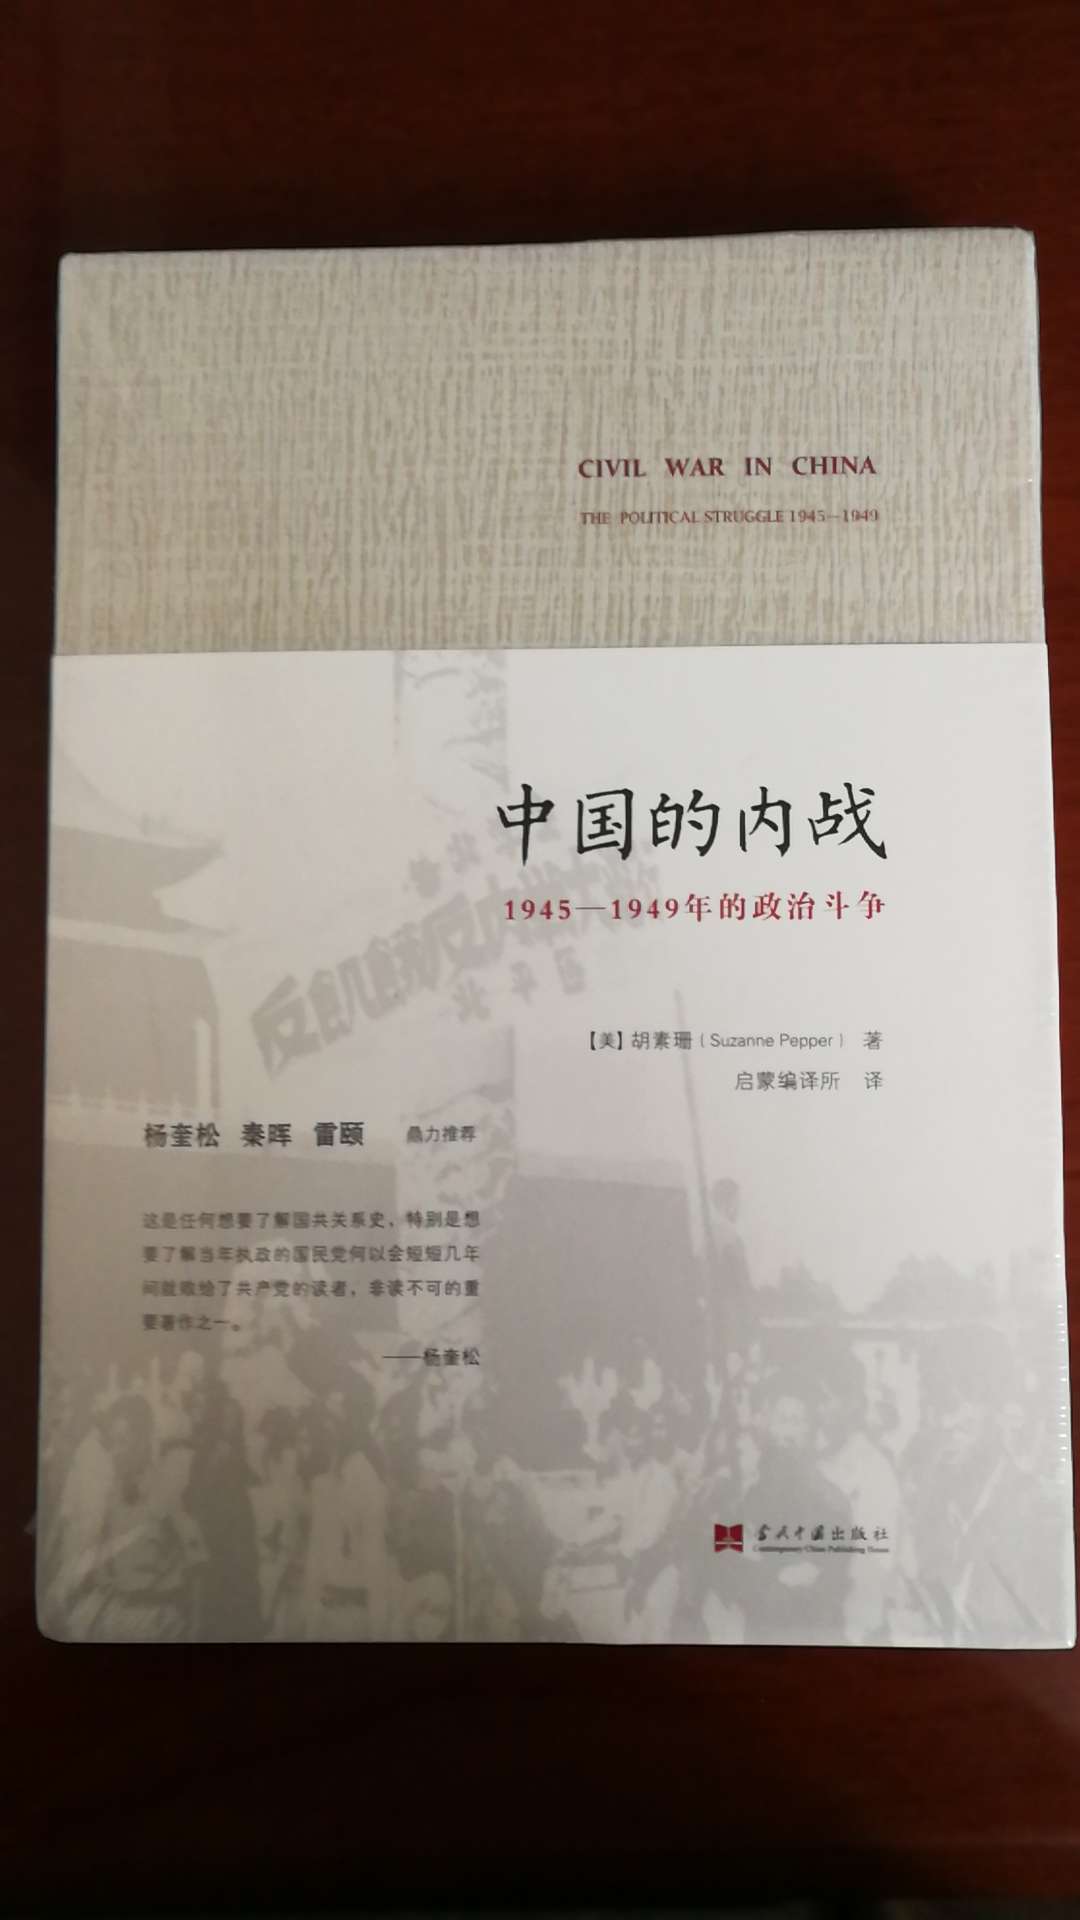 当代中国出版社出版的胡素珊作品，平装16开，书脊胶装纸质优良，排版印刷得体大方，活动期间价格实惠，送货速度快，非常满意。